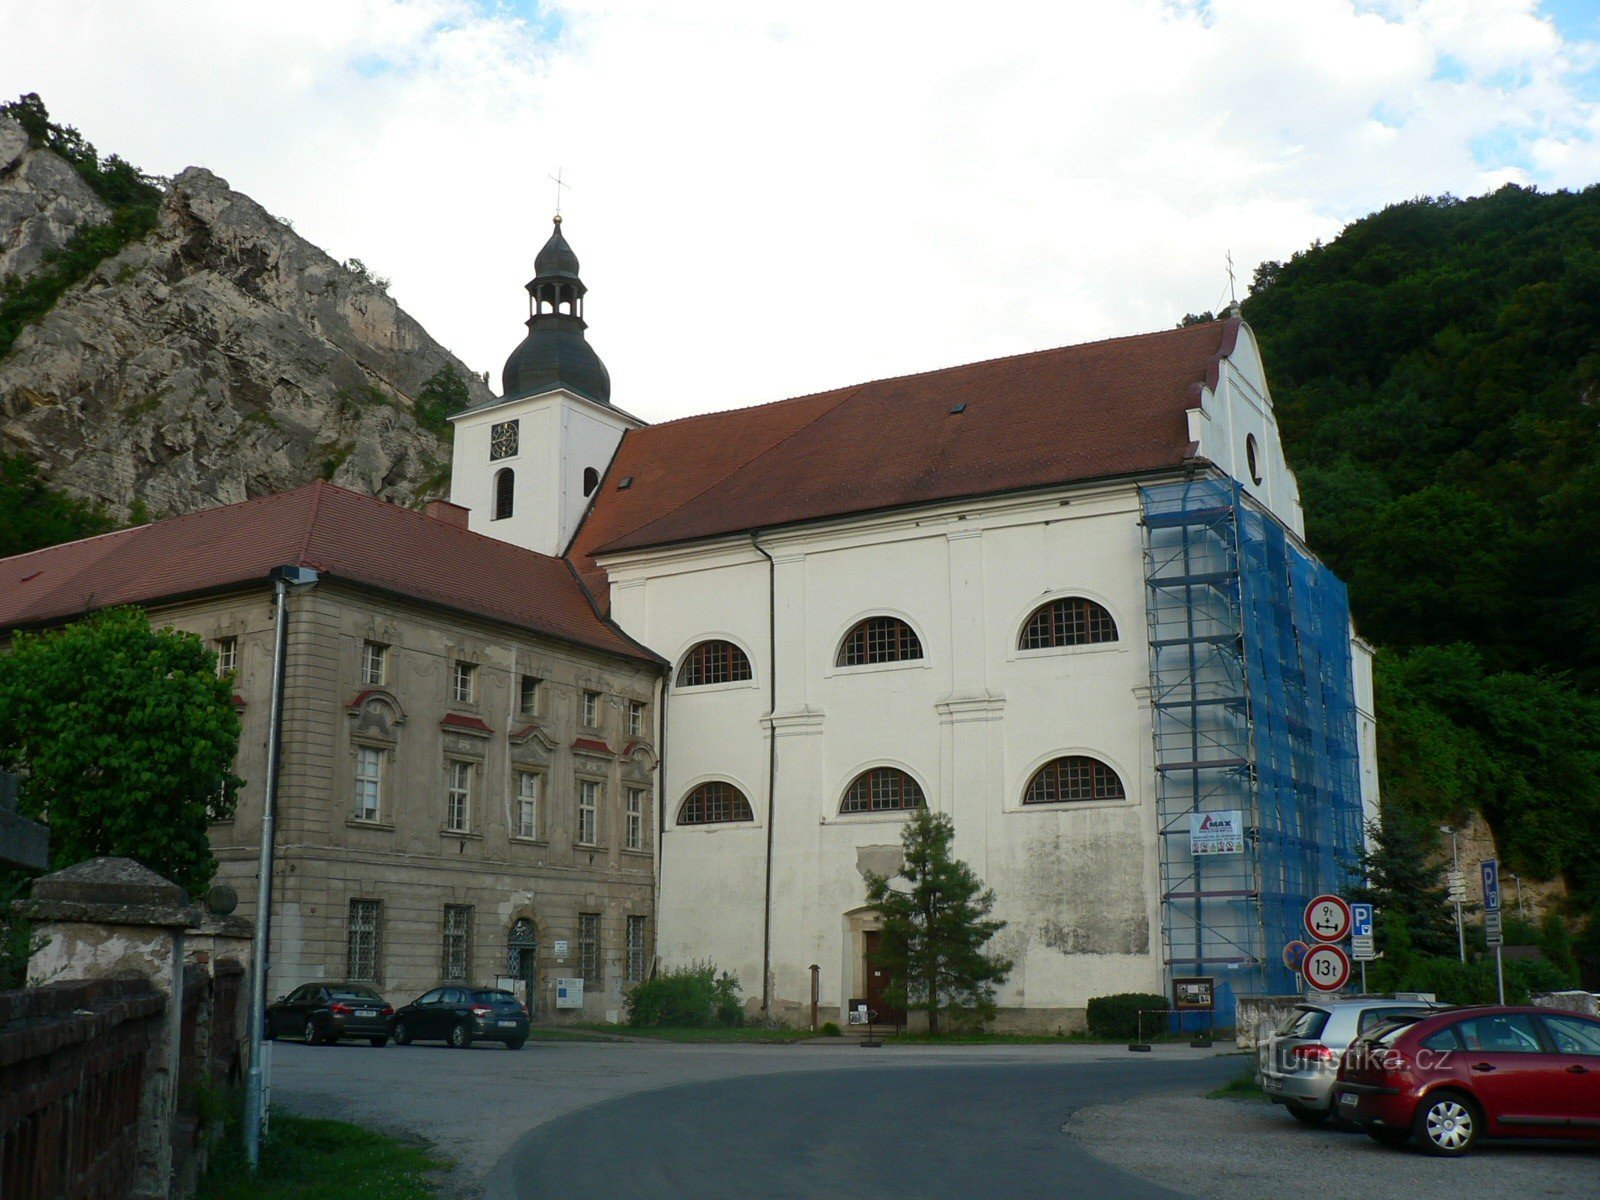 Монастырь и церковь Святого Иоанна Крестителя